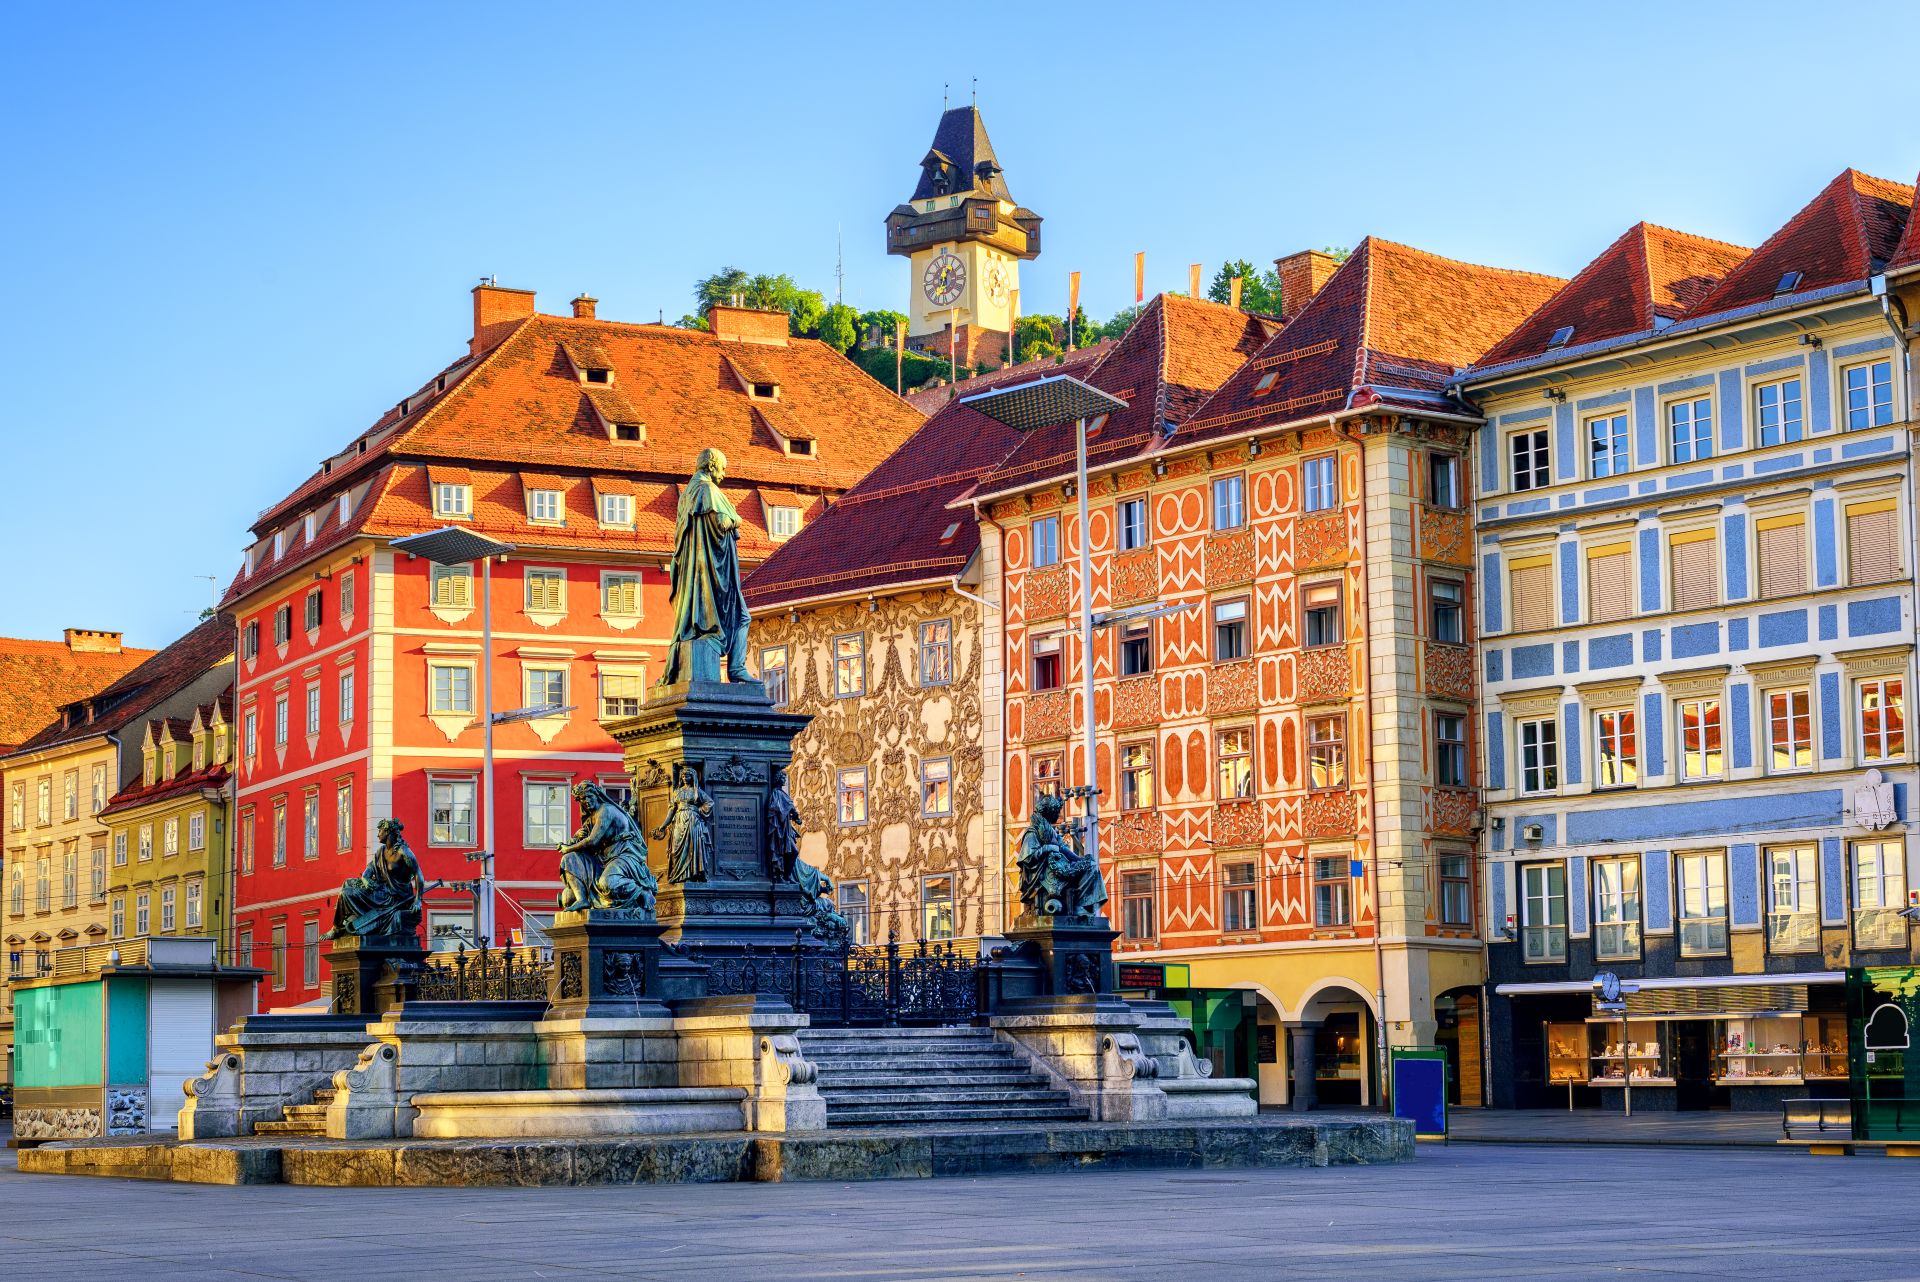 Façades peintes et tour de l'horloge dans la vieille ville de Graz